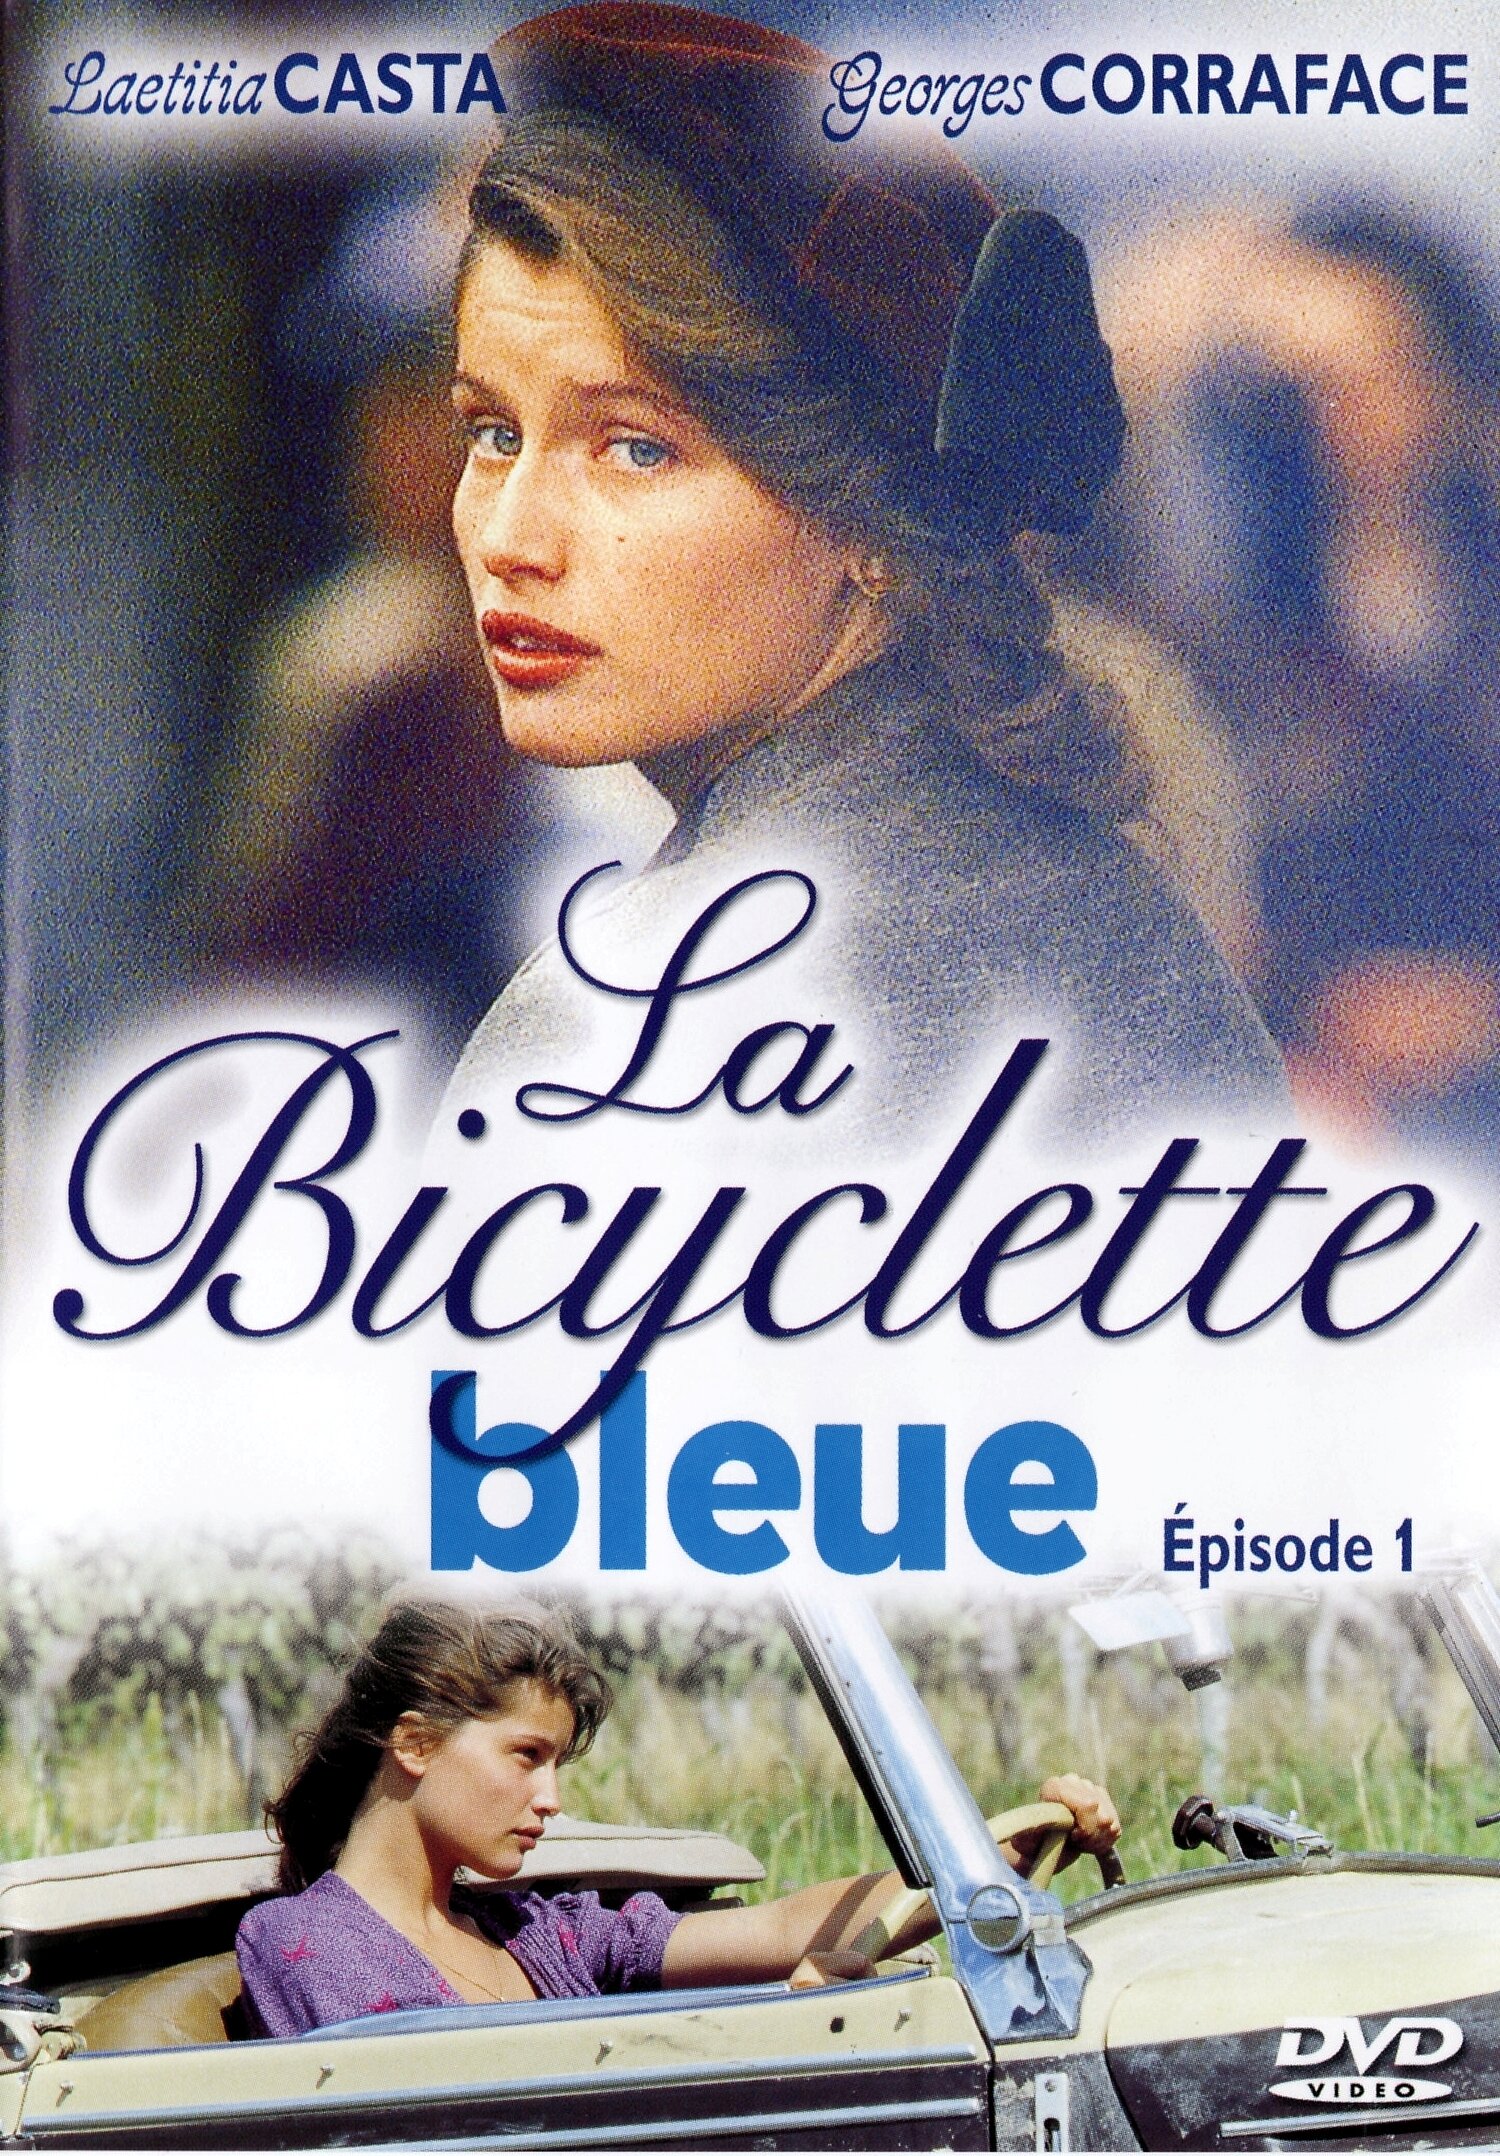 Смотреть фильм Голубой велосипед 2000 года онлайн